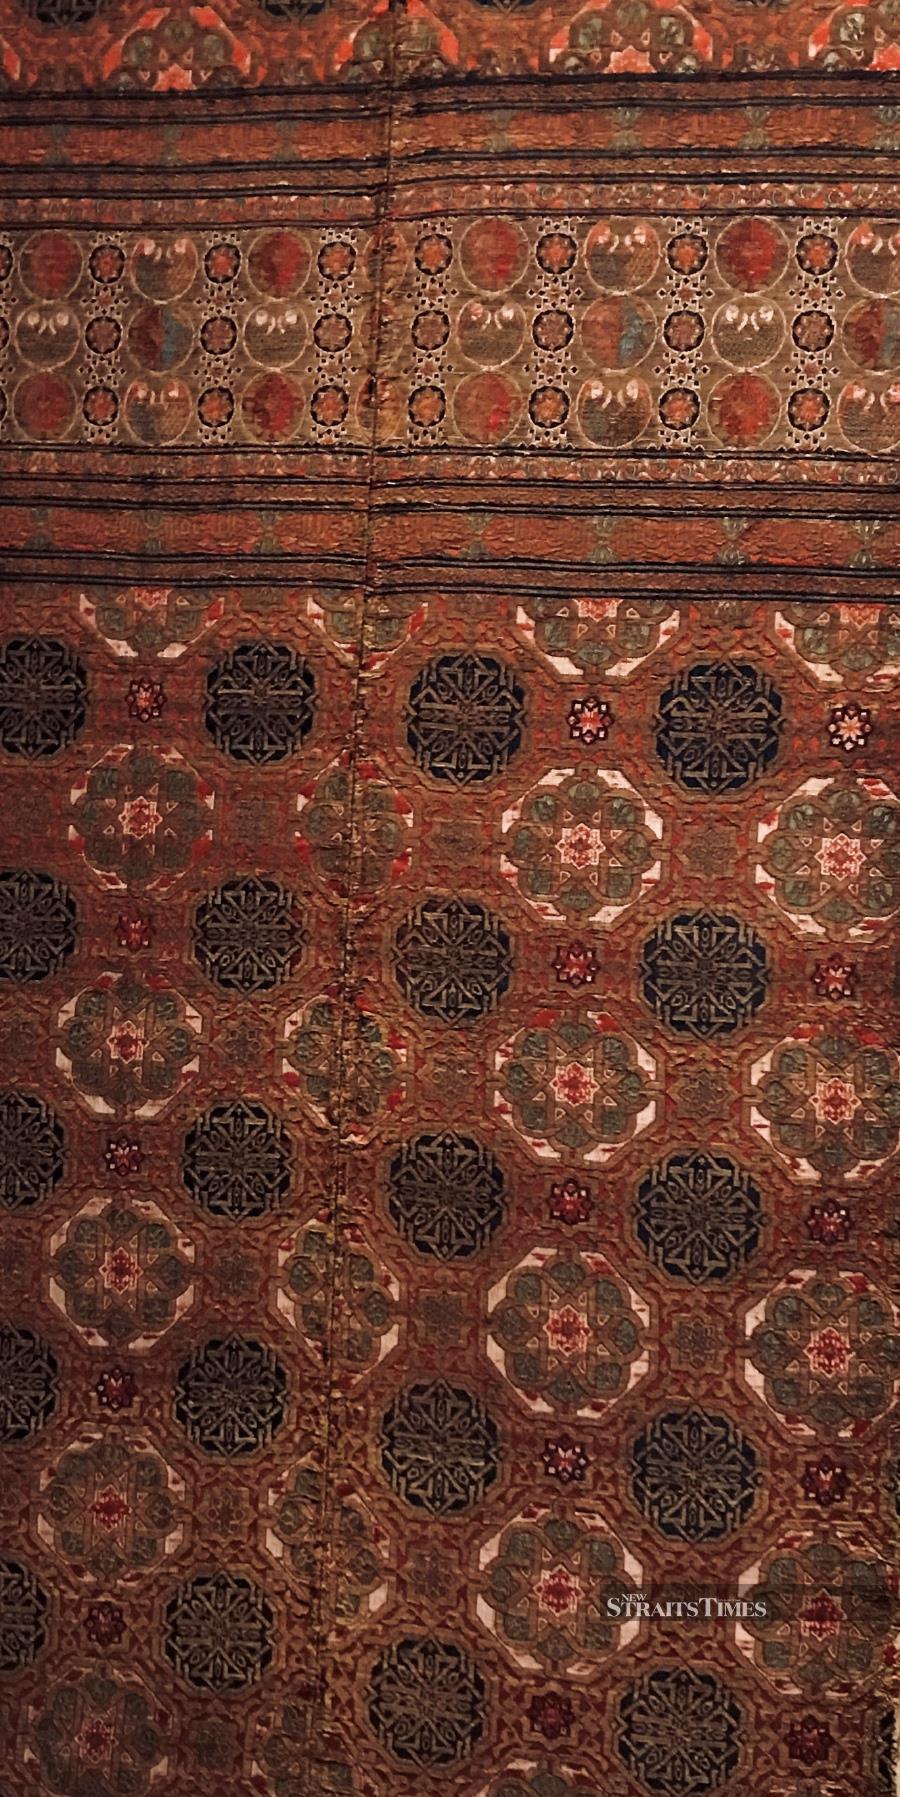  A silk textile fragment from Muslim Spain, circa 1300.